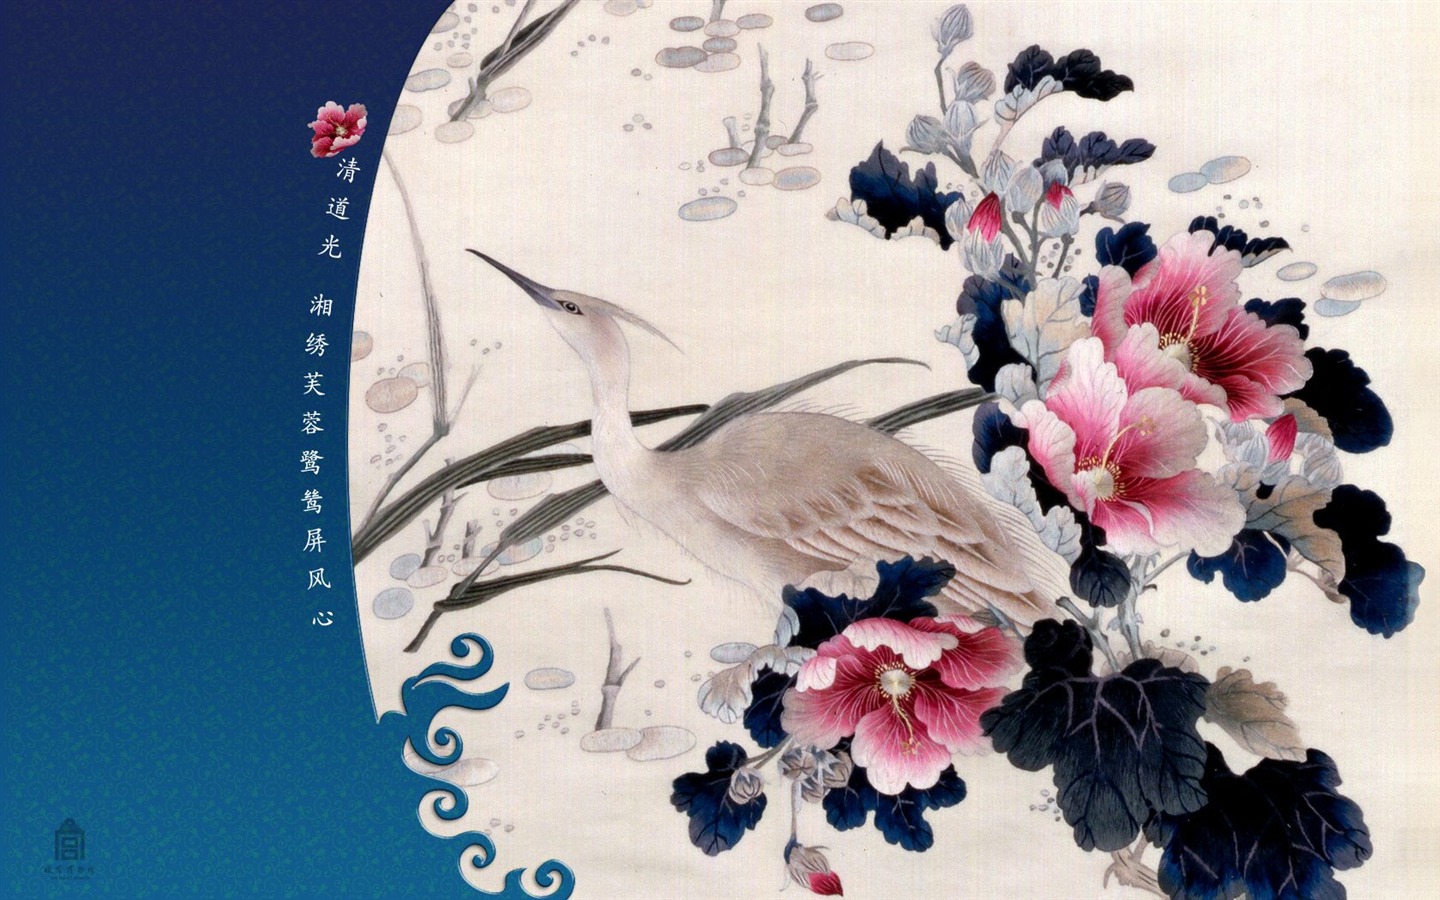 北京故宫博物院 文物展壁纸(二)23 - 1440x900